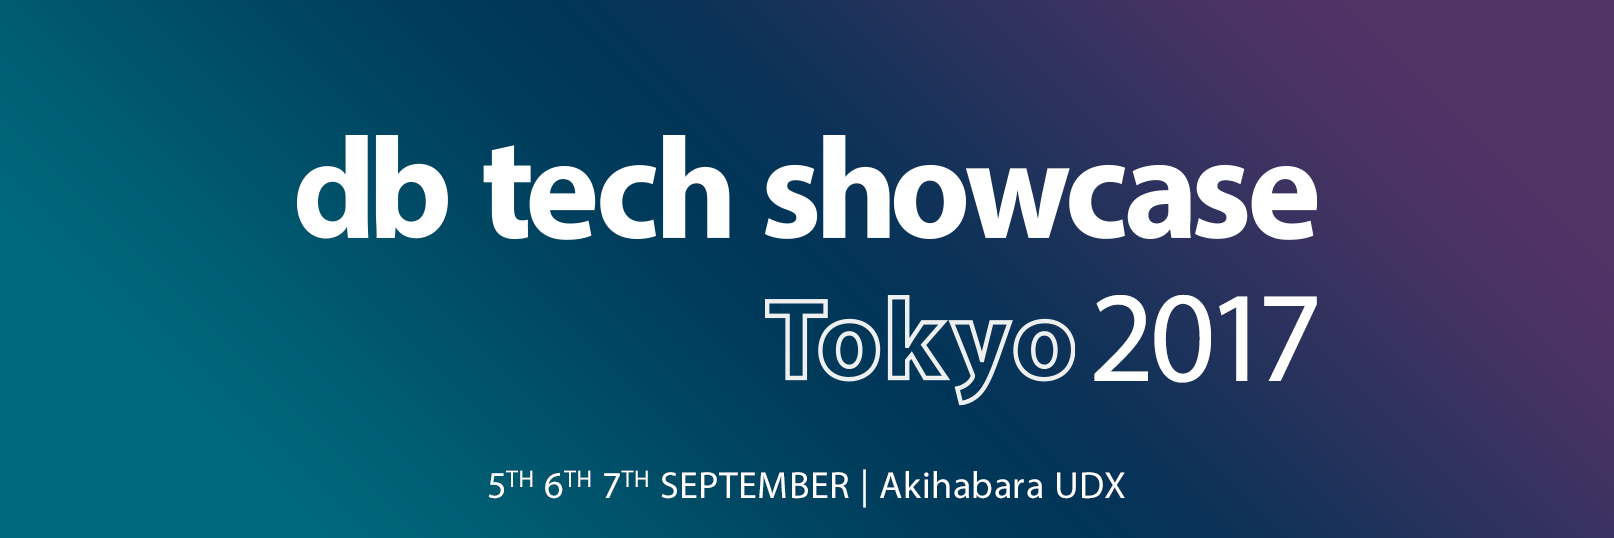 db tech showcase Tokyo 2017